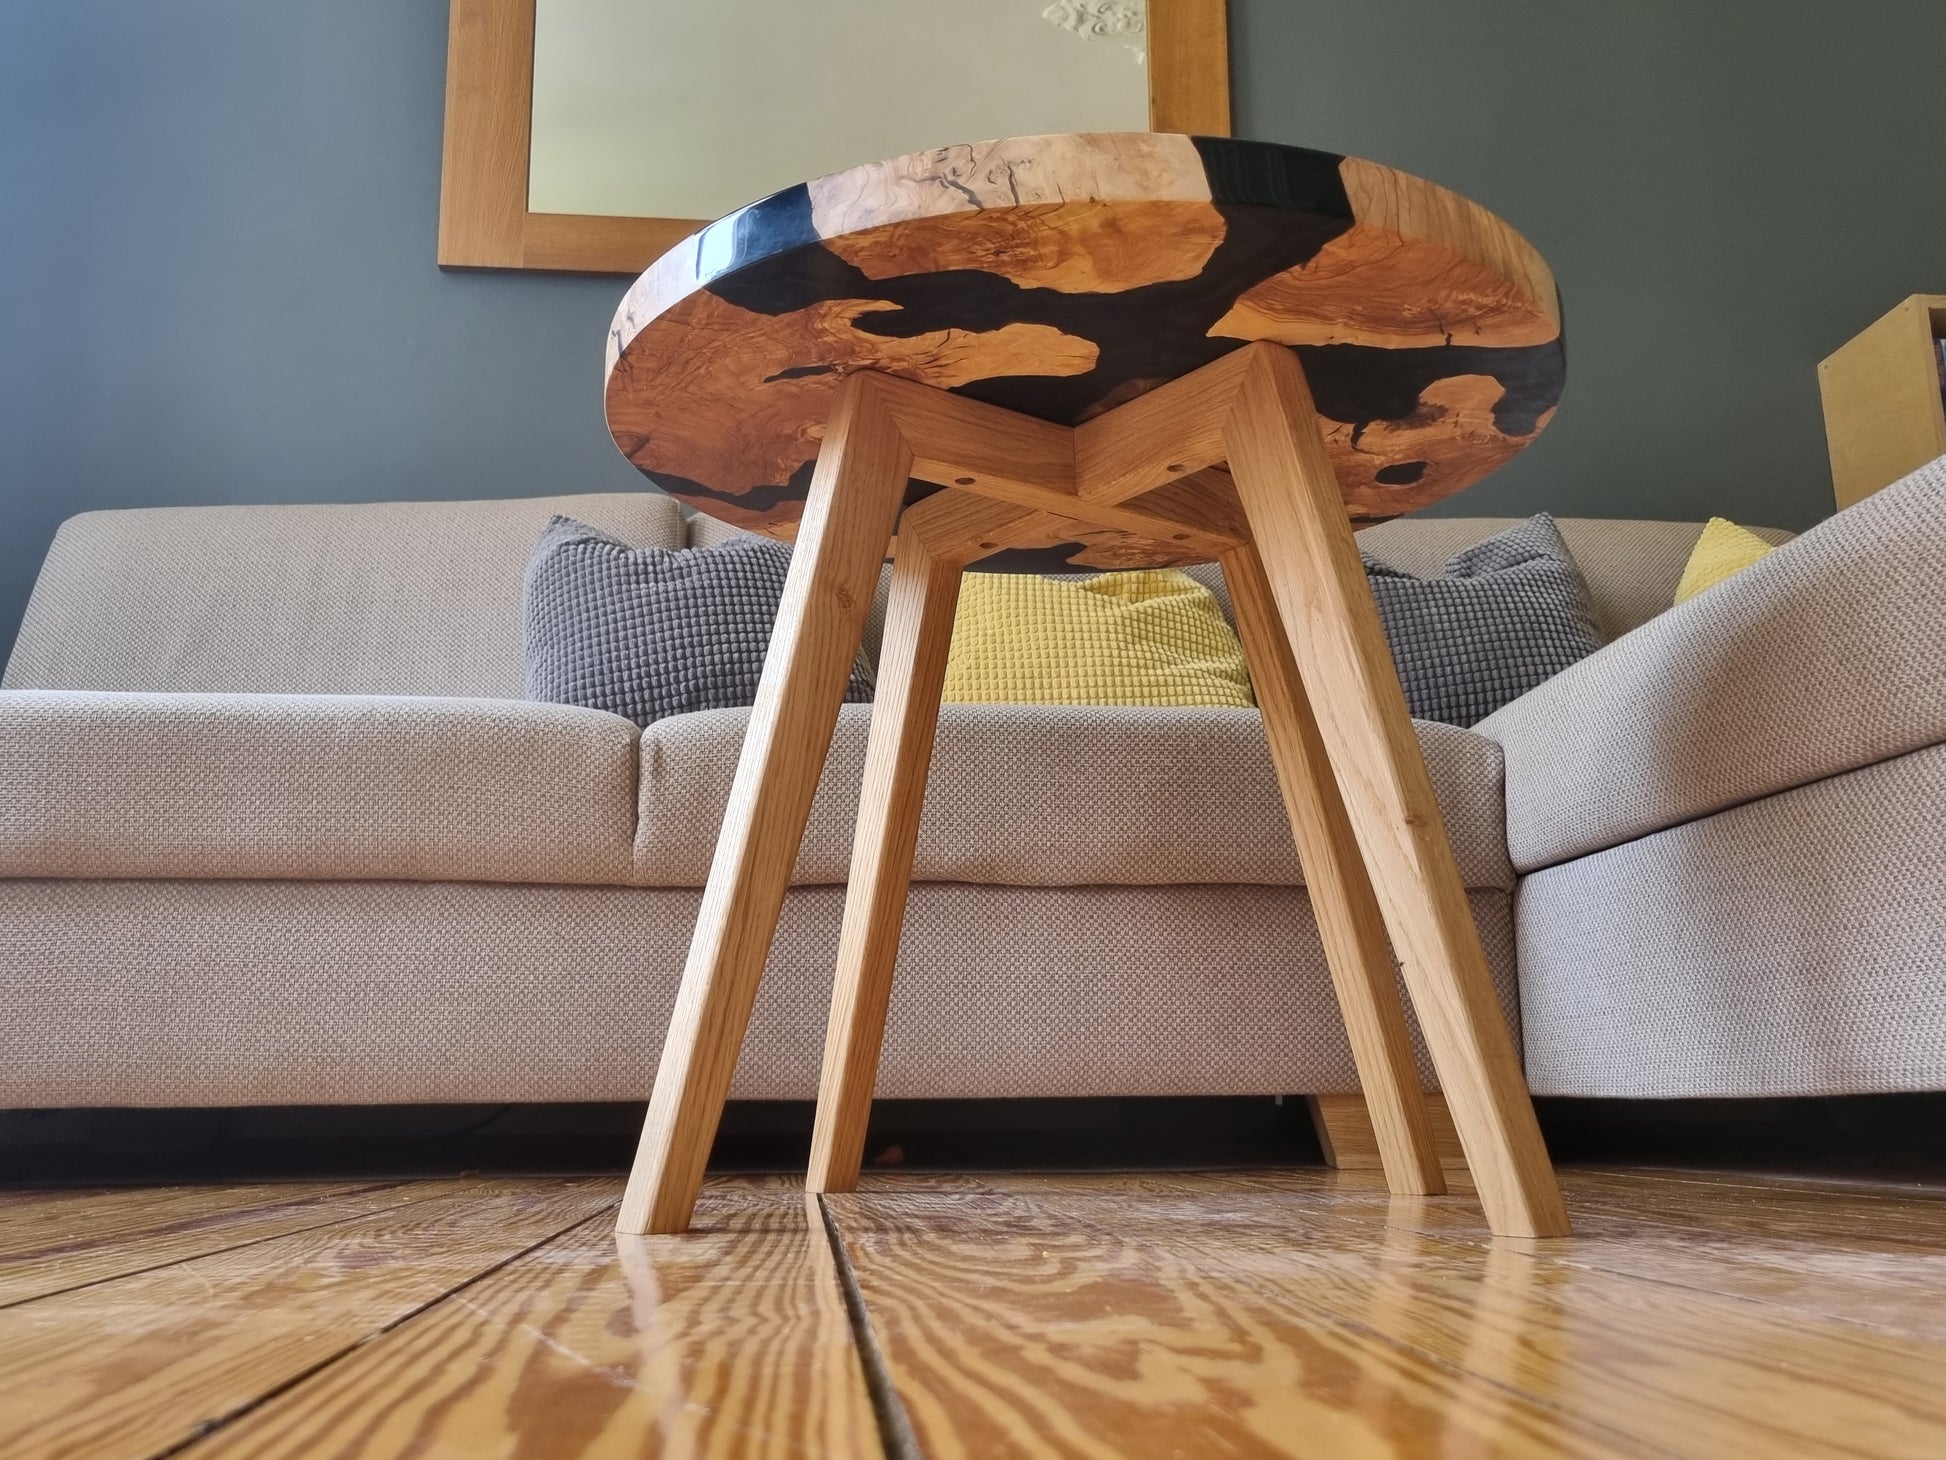 Mesa de resina epoxi en madera de olivo con óptica de agua - Forkl